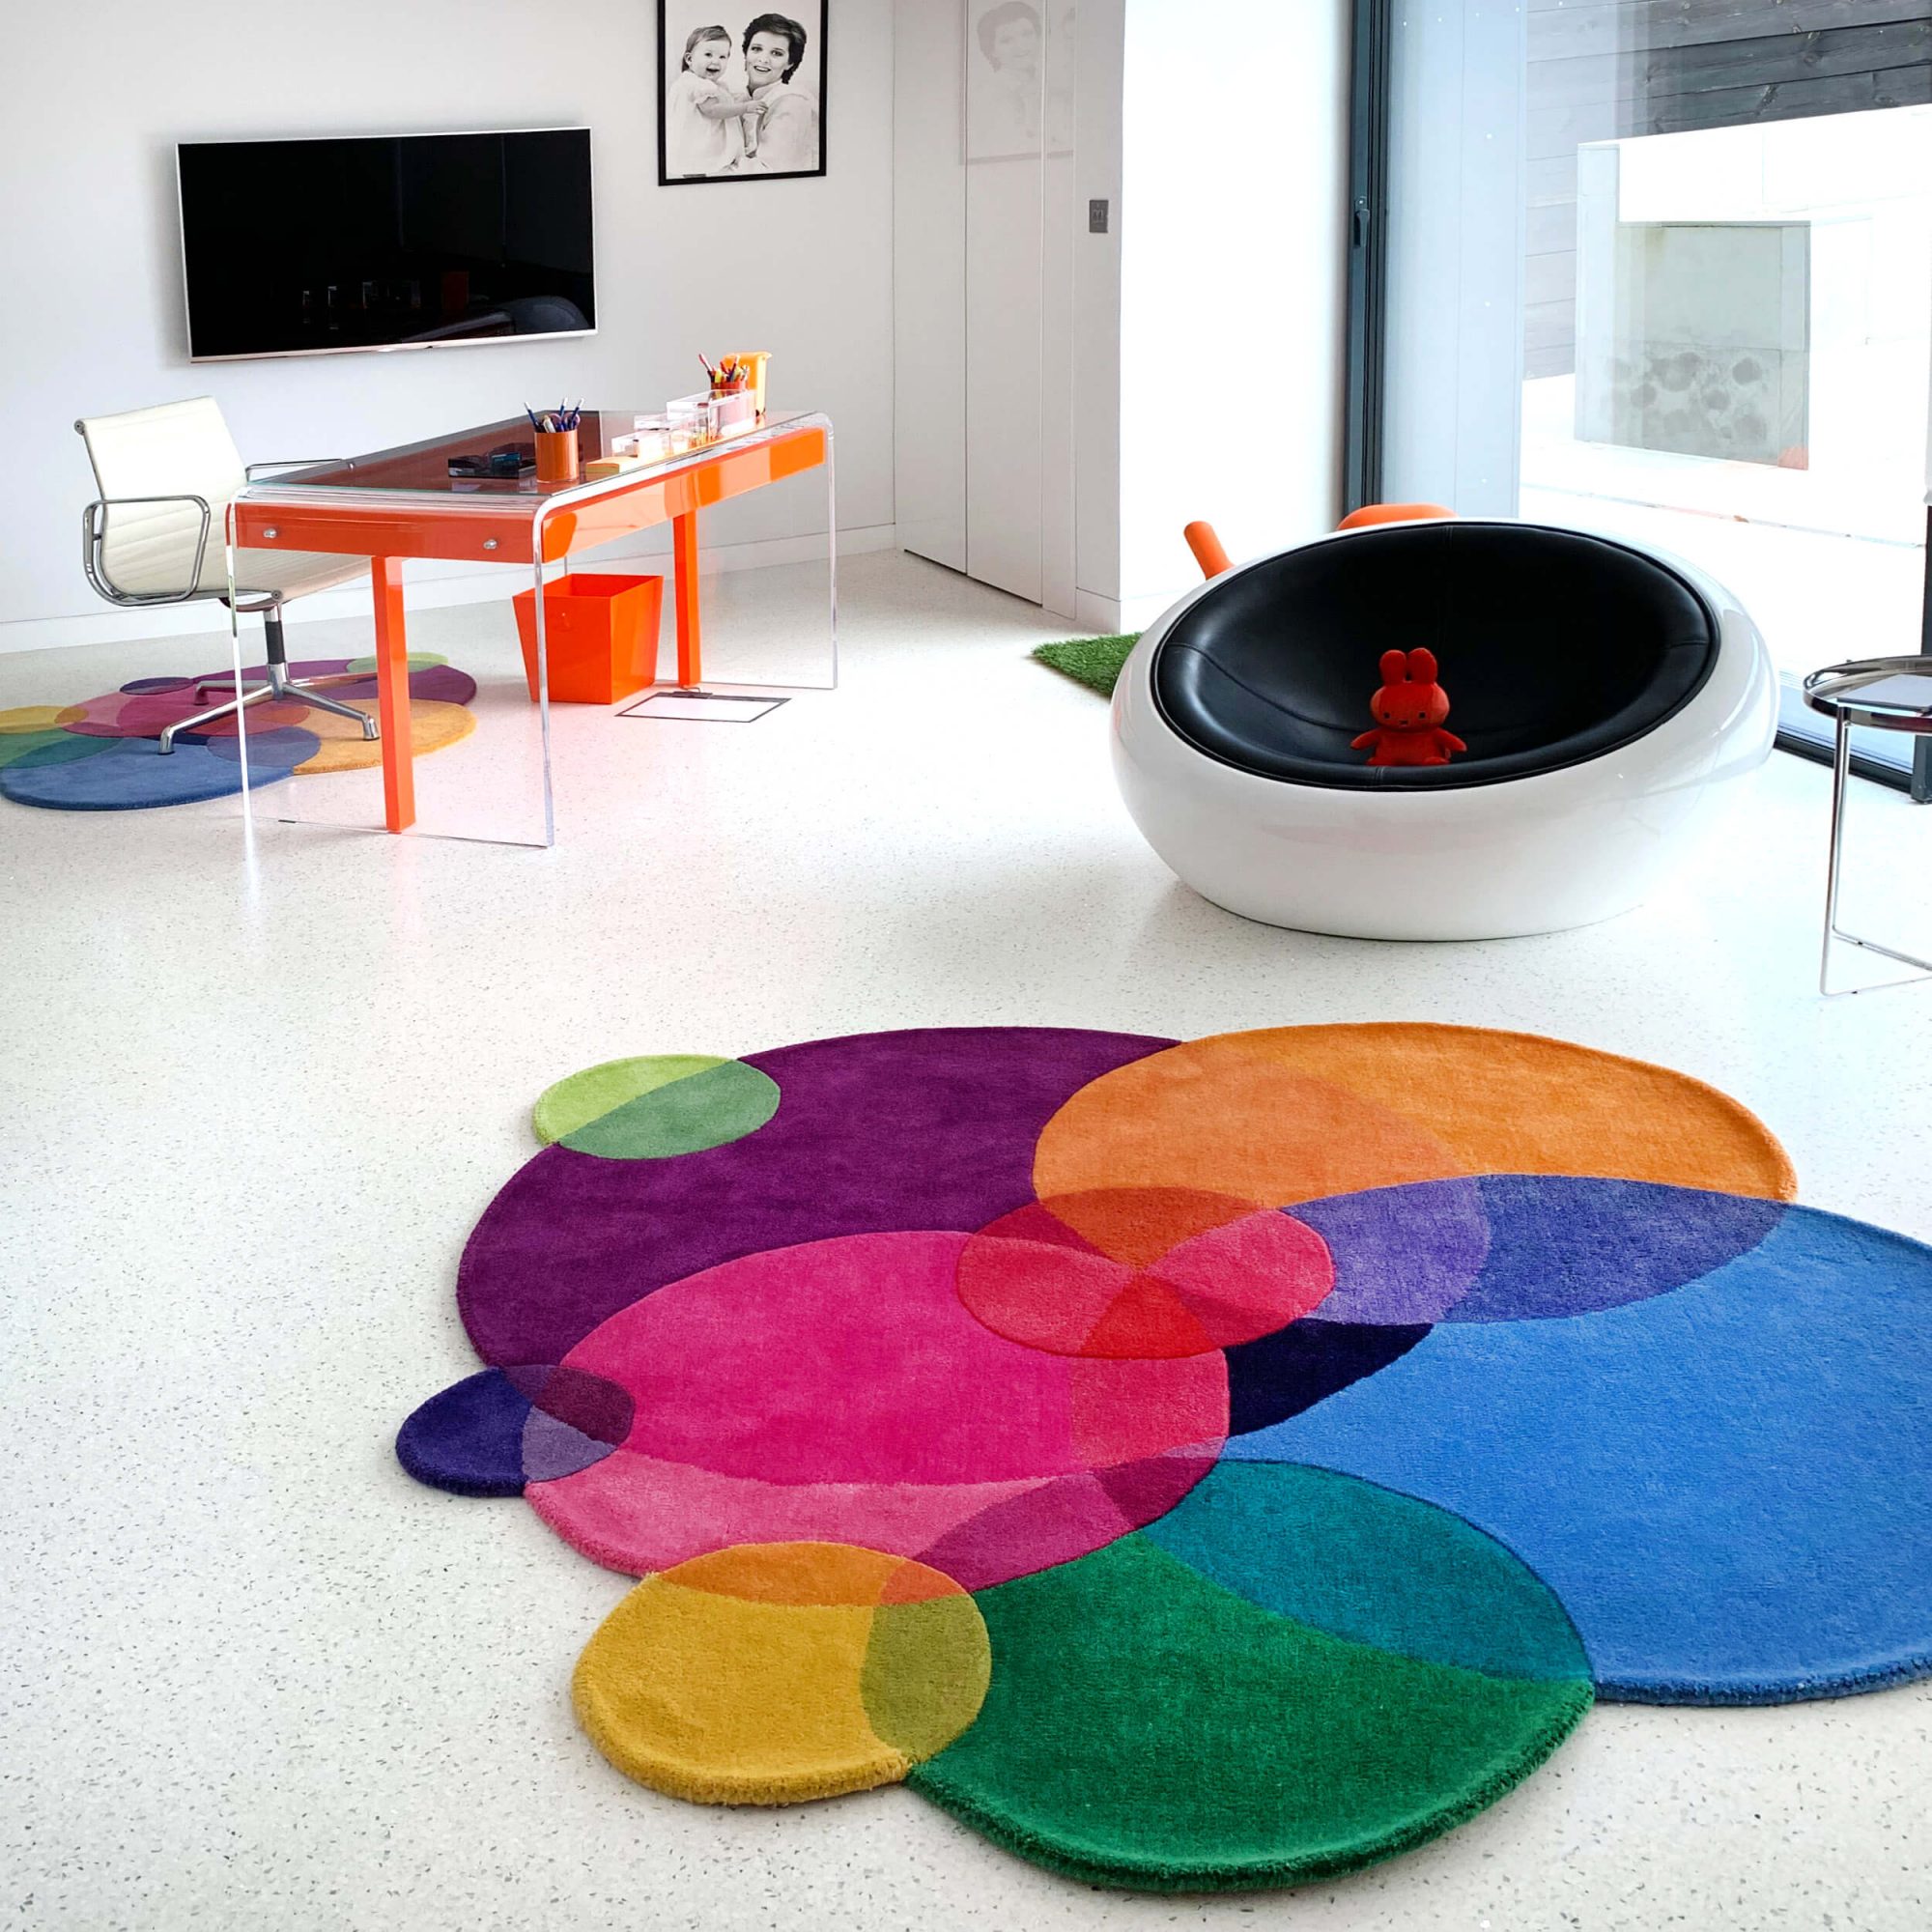 Designer Home Office Furniture - Bubbles Rug